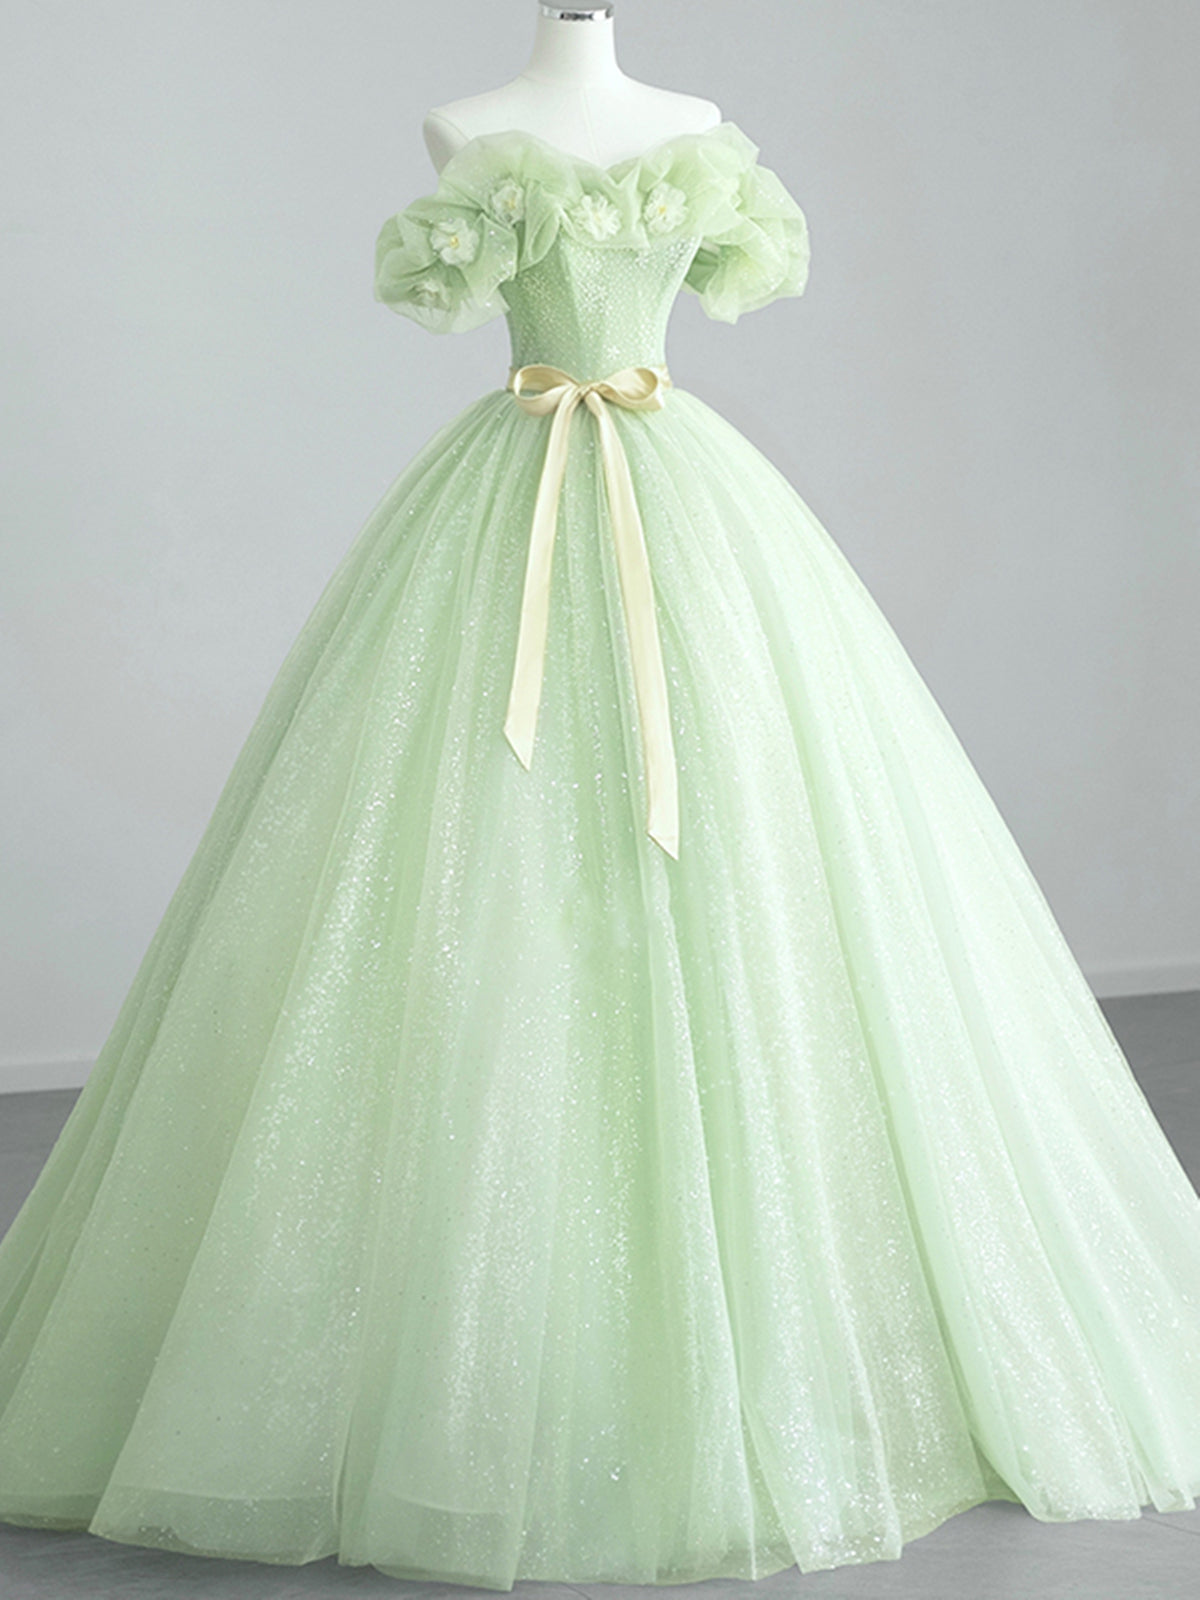 Winter Wedding, Off the Shoulder Light Green Floral Prom Dresses, Green Floral Formal Graduation Dress